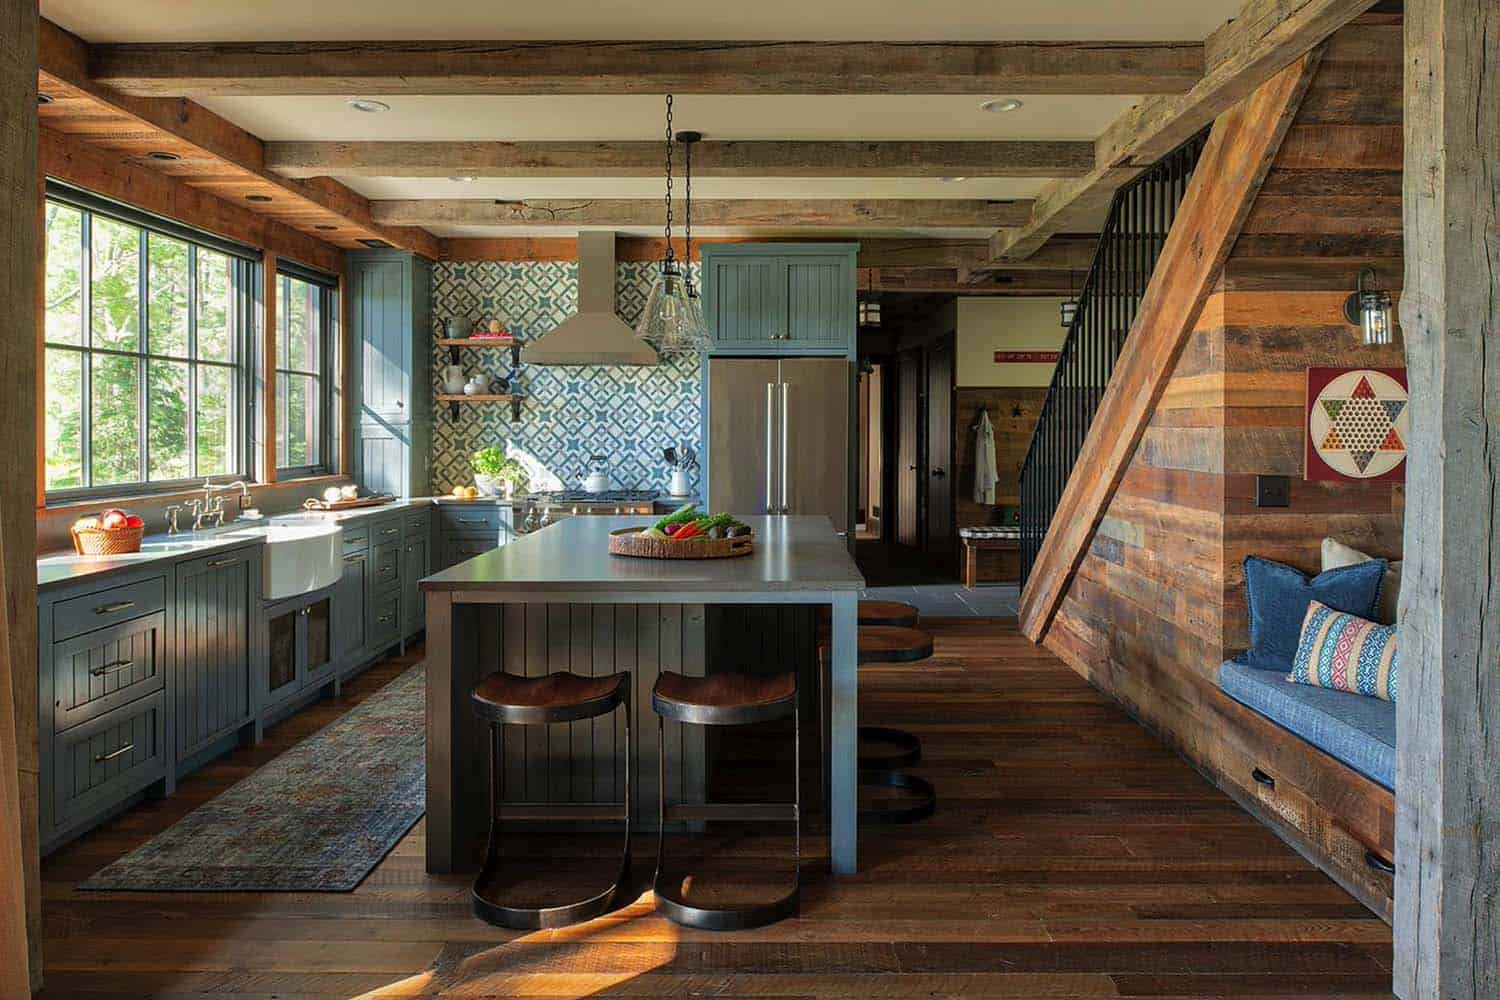 Nhà bếp lấy cảm hứng từ trang trại với tông màu xanh được hiện đại hóa với tấm nền dệt may vui nhộn, các thiết bị bằng thép không gỉ và một bồn rửa bát lớn.